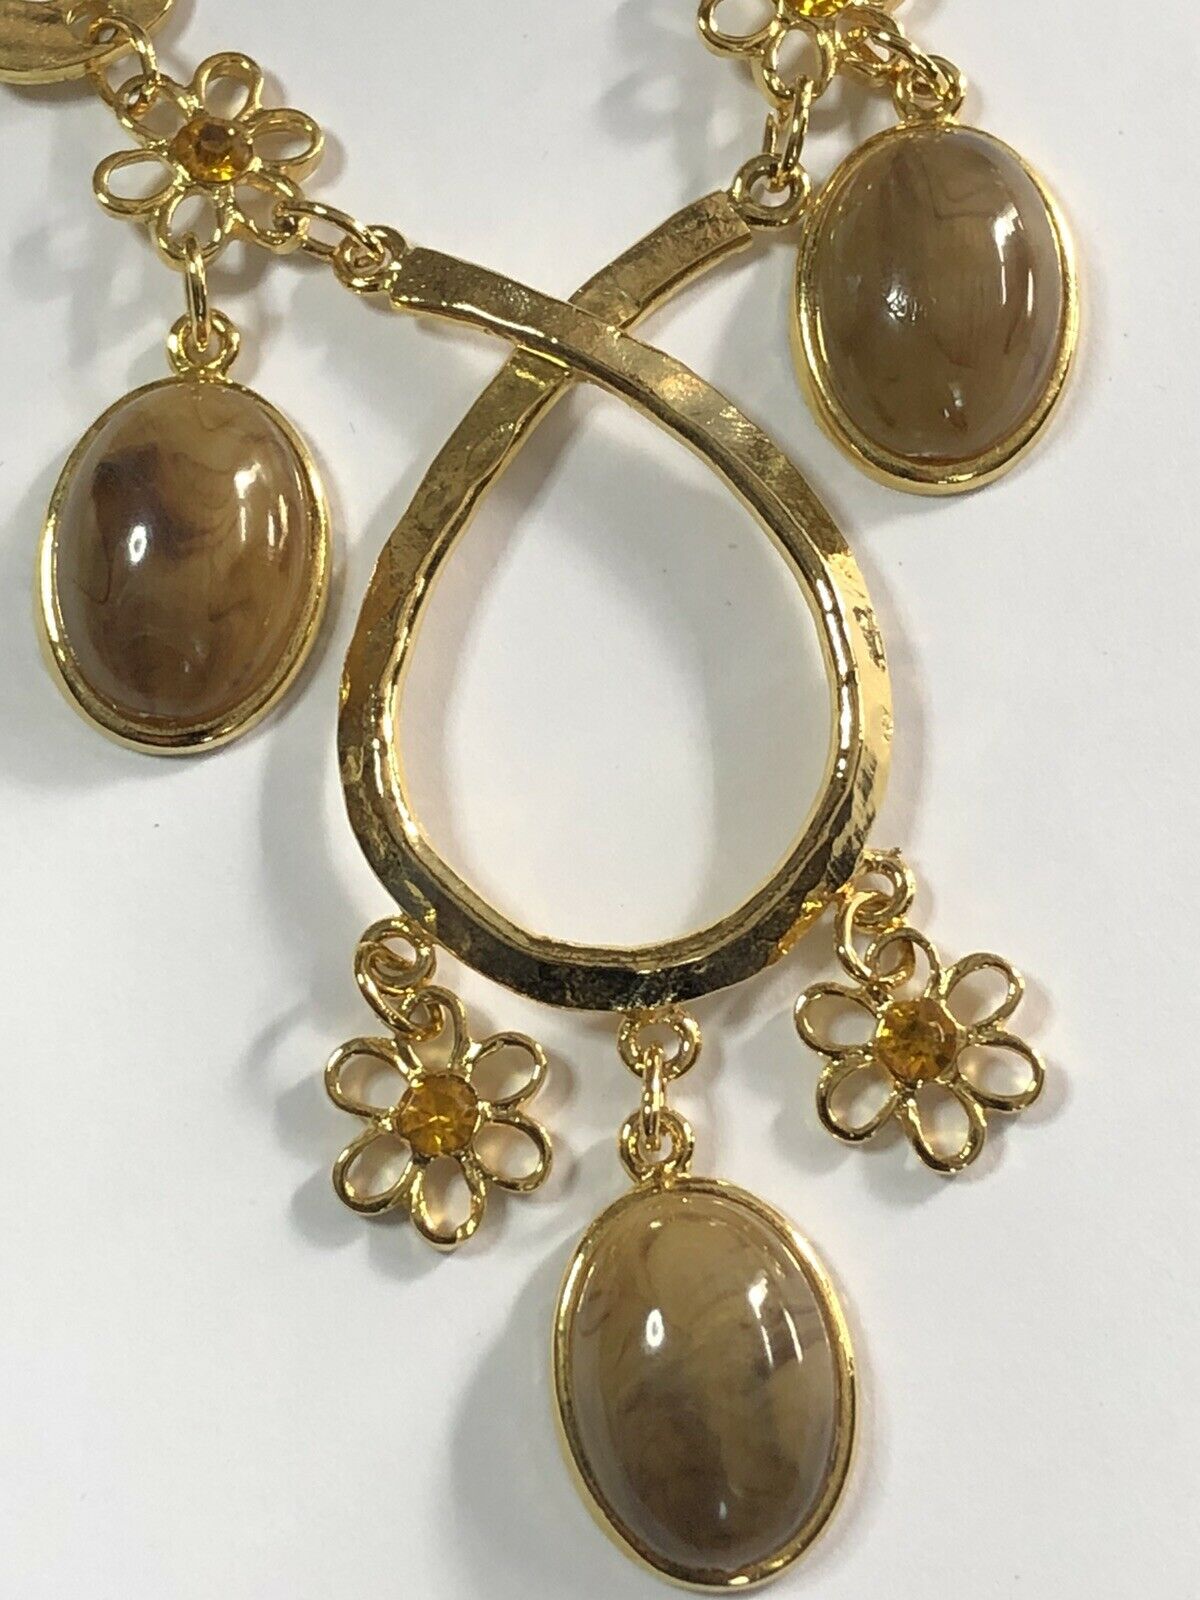 Vintage 1980s Gold Plated Unique Flowers Drop Necklace